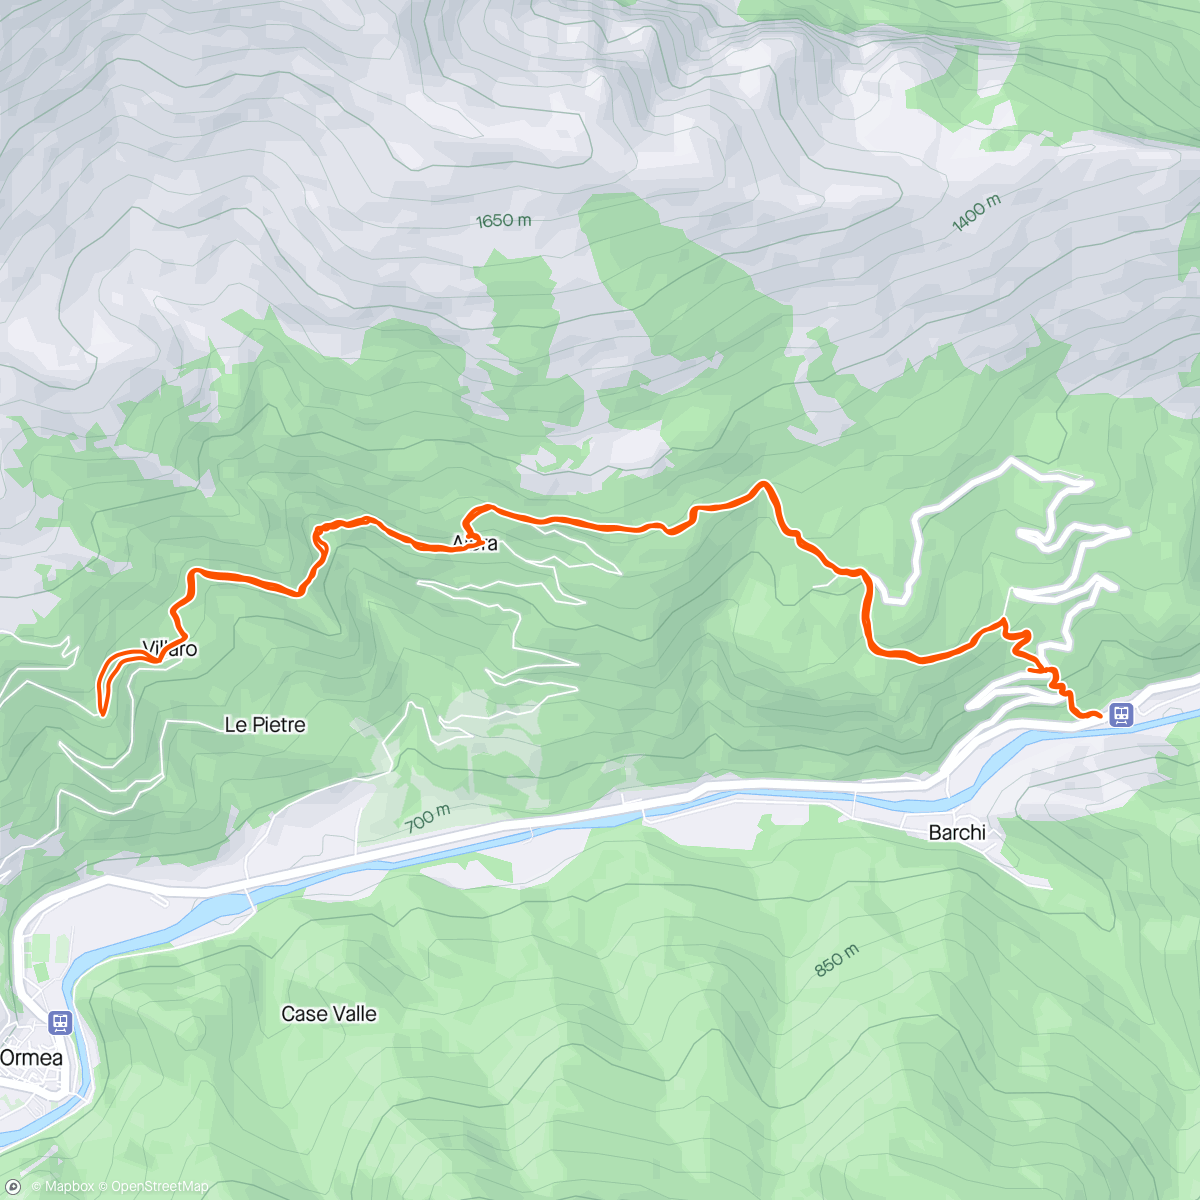 Mapa da atividade, Villaro Eca e ritorno